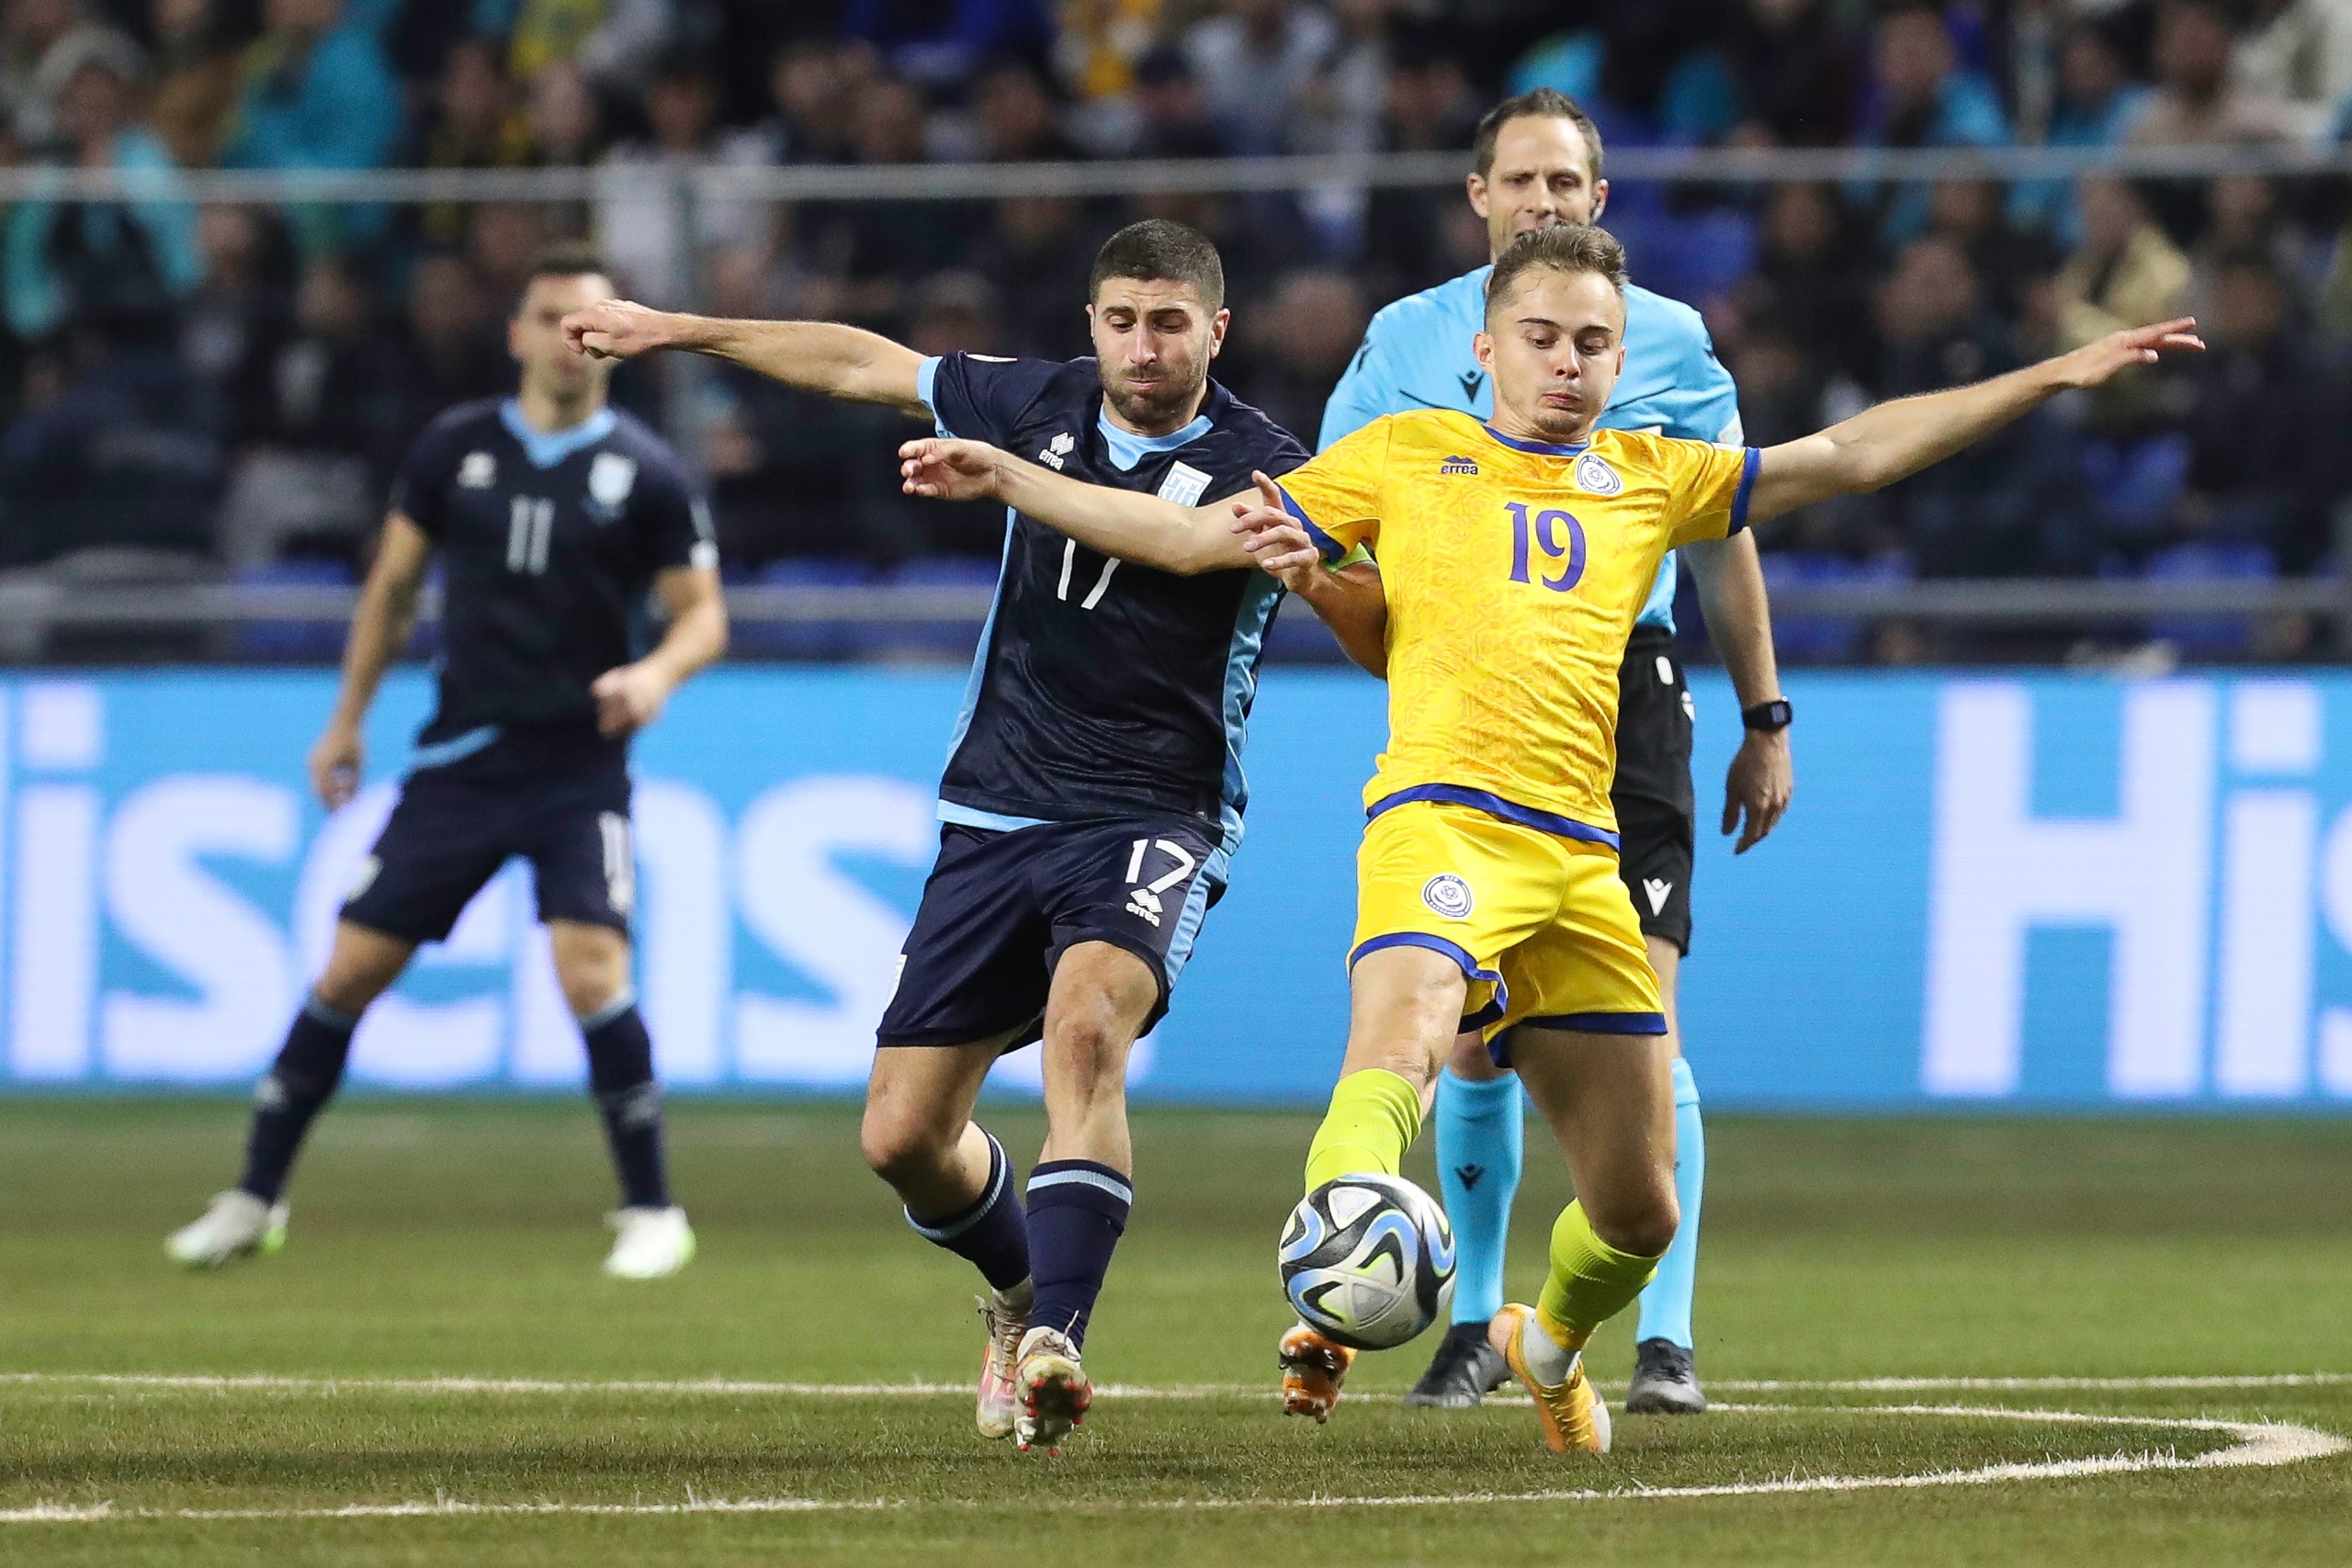 «Приехал к себе домой». Зуев – о получении гражданства, дебюте за сборную и матче против Греции